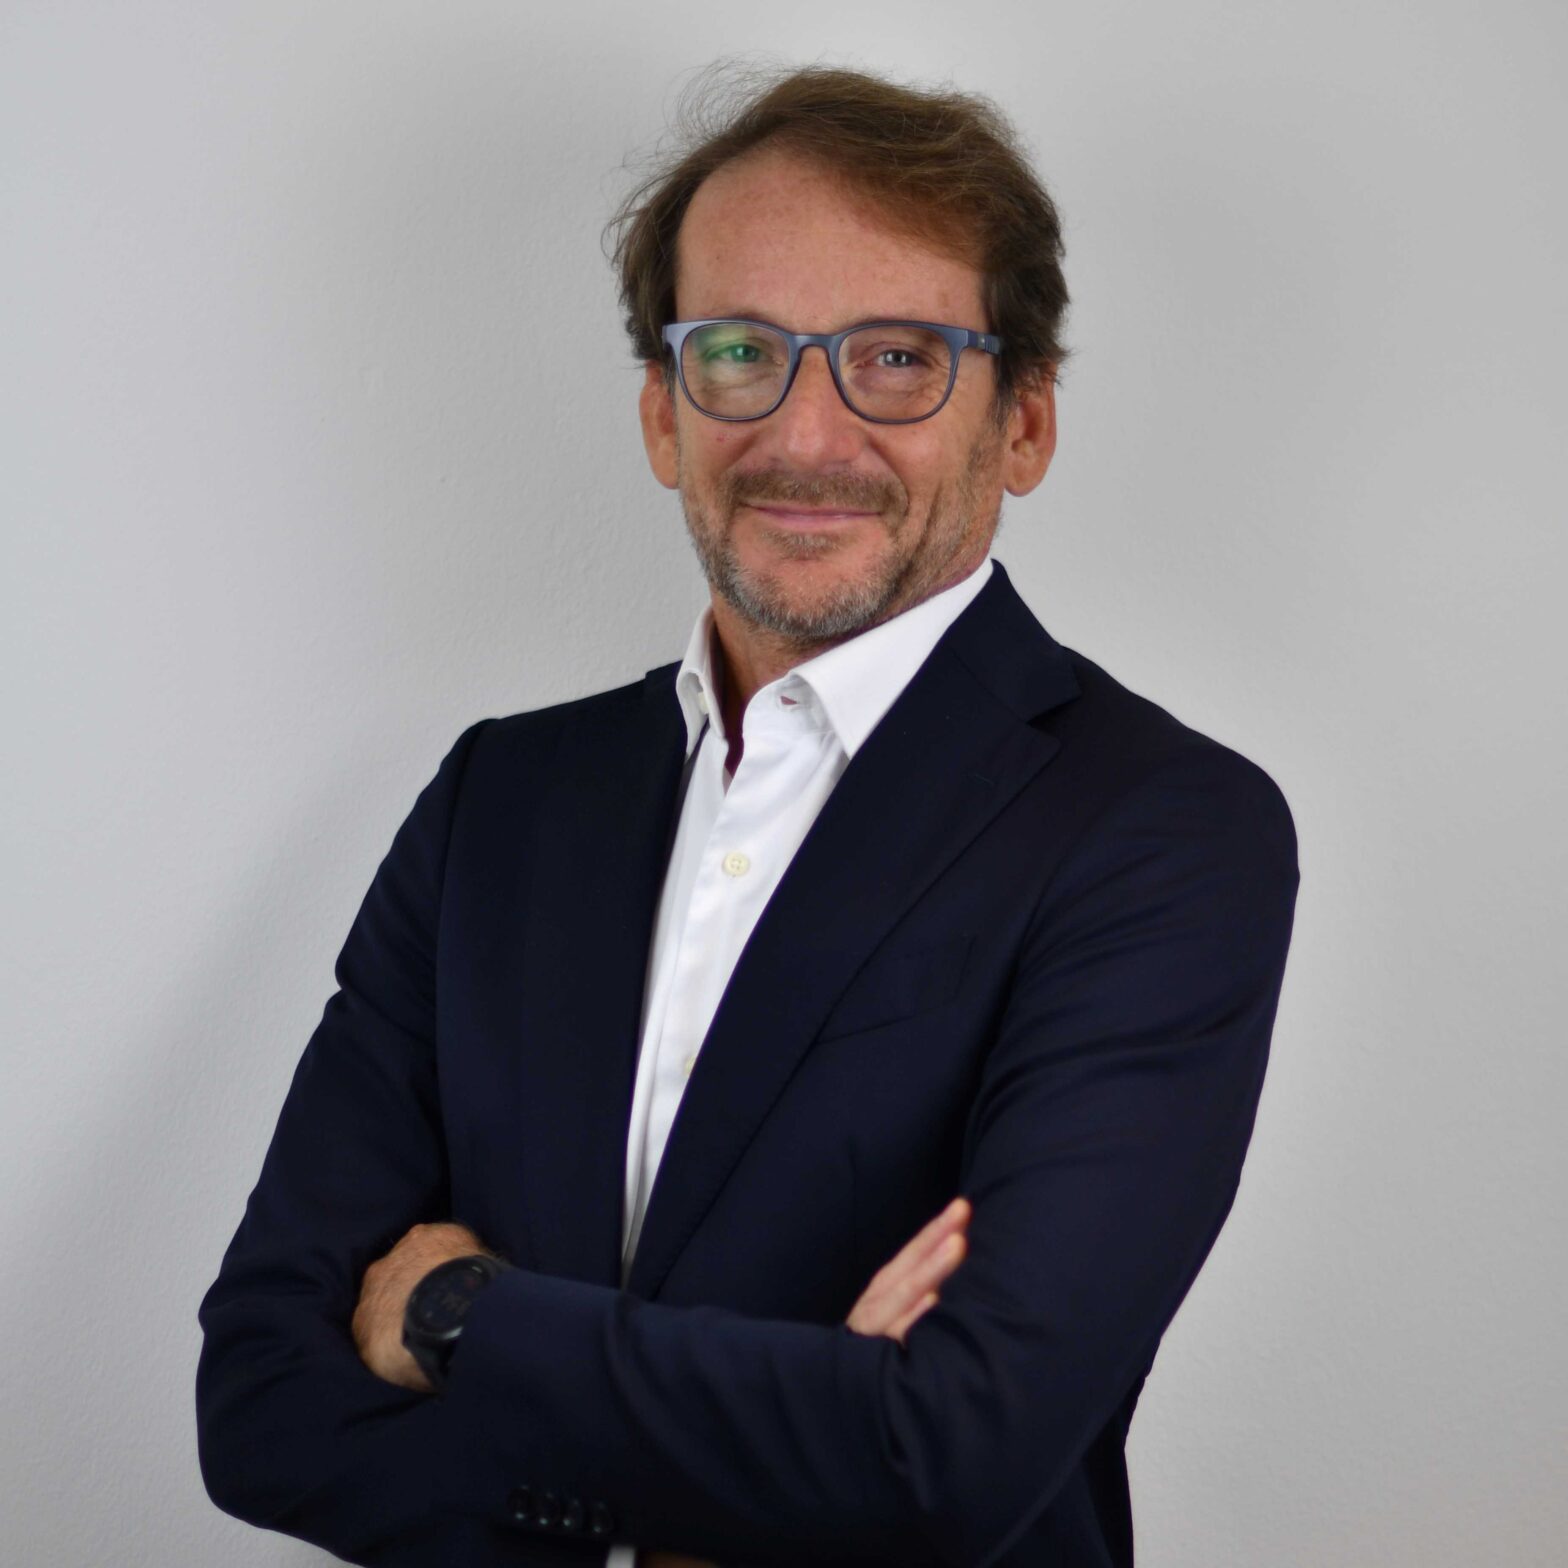 Stefano Alberti co-responsabile della Divisione Digitale & Advisory - Intermonte